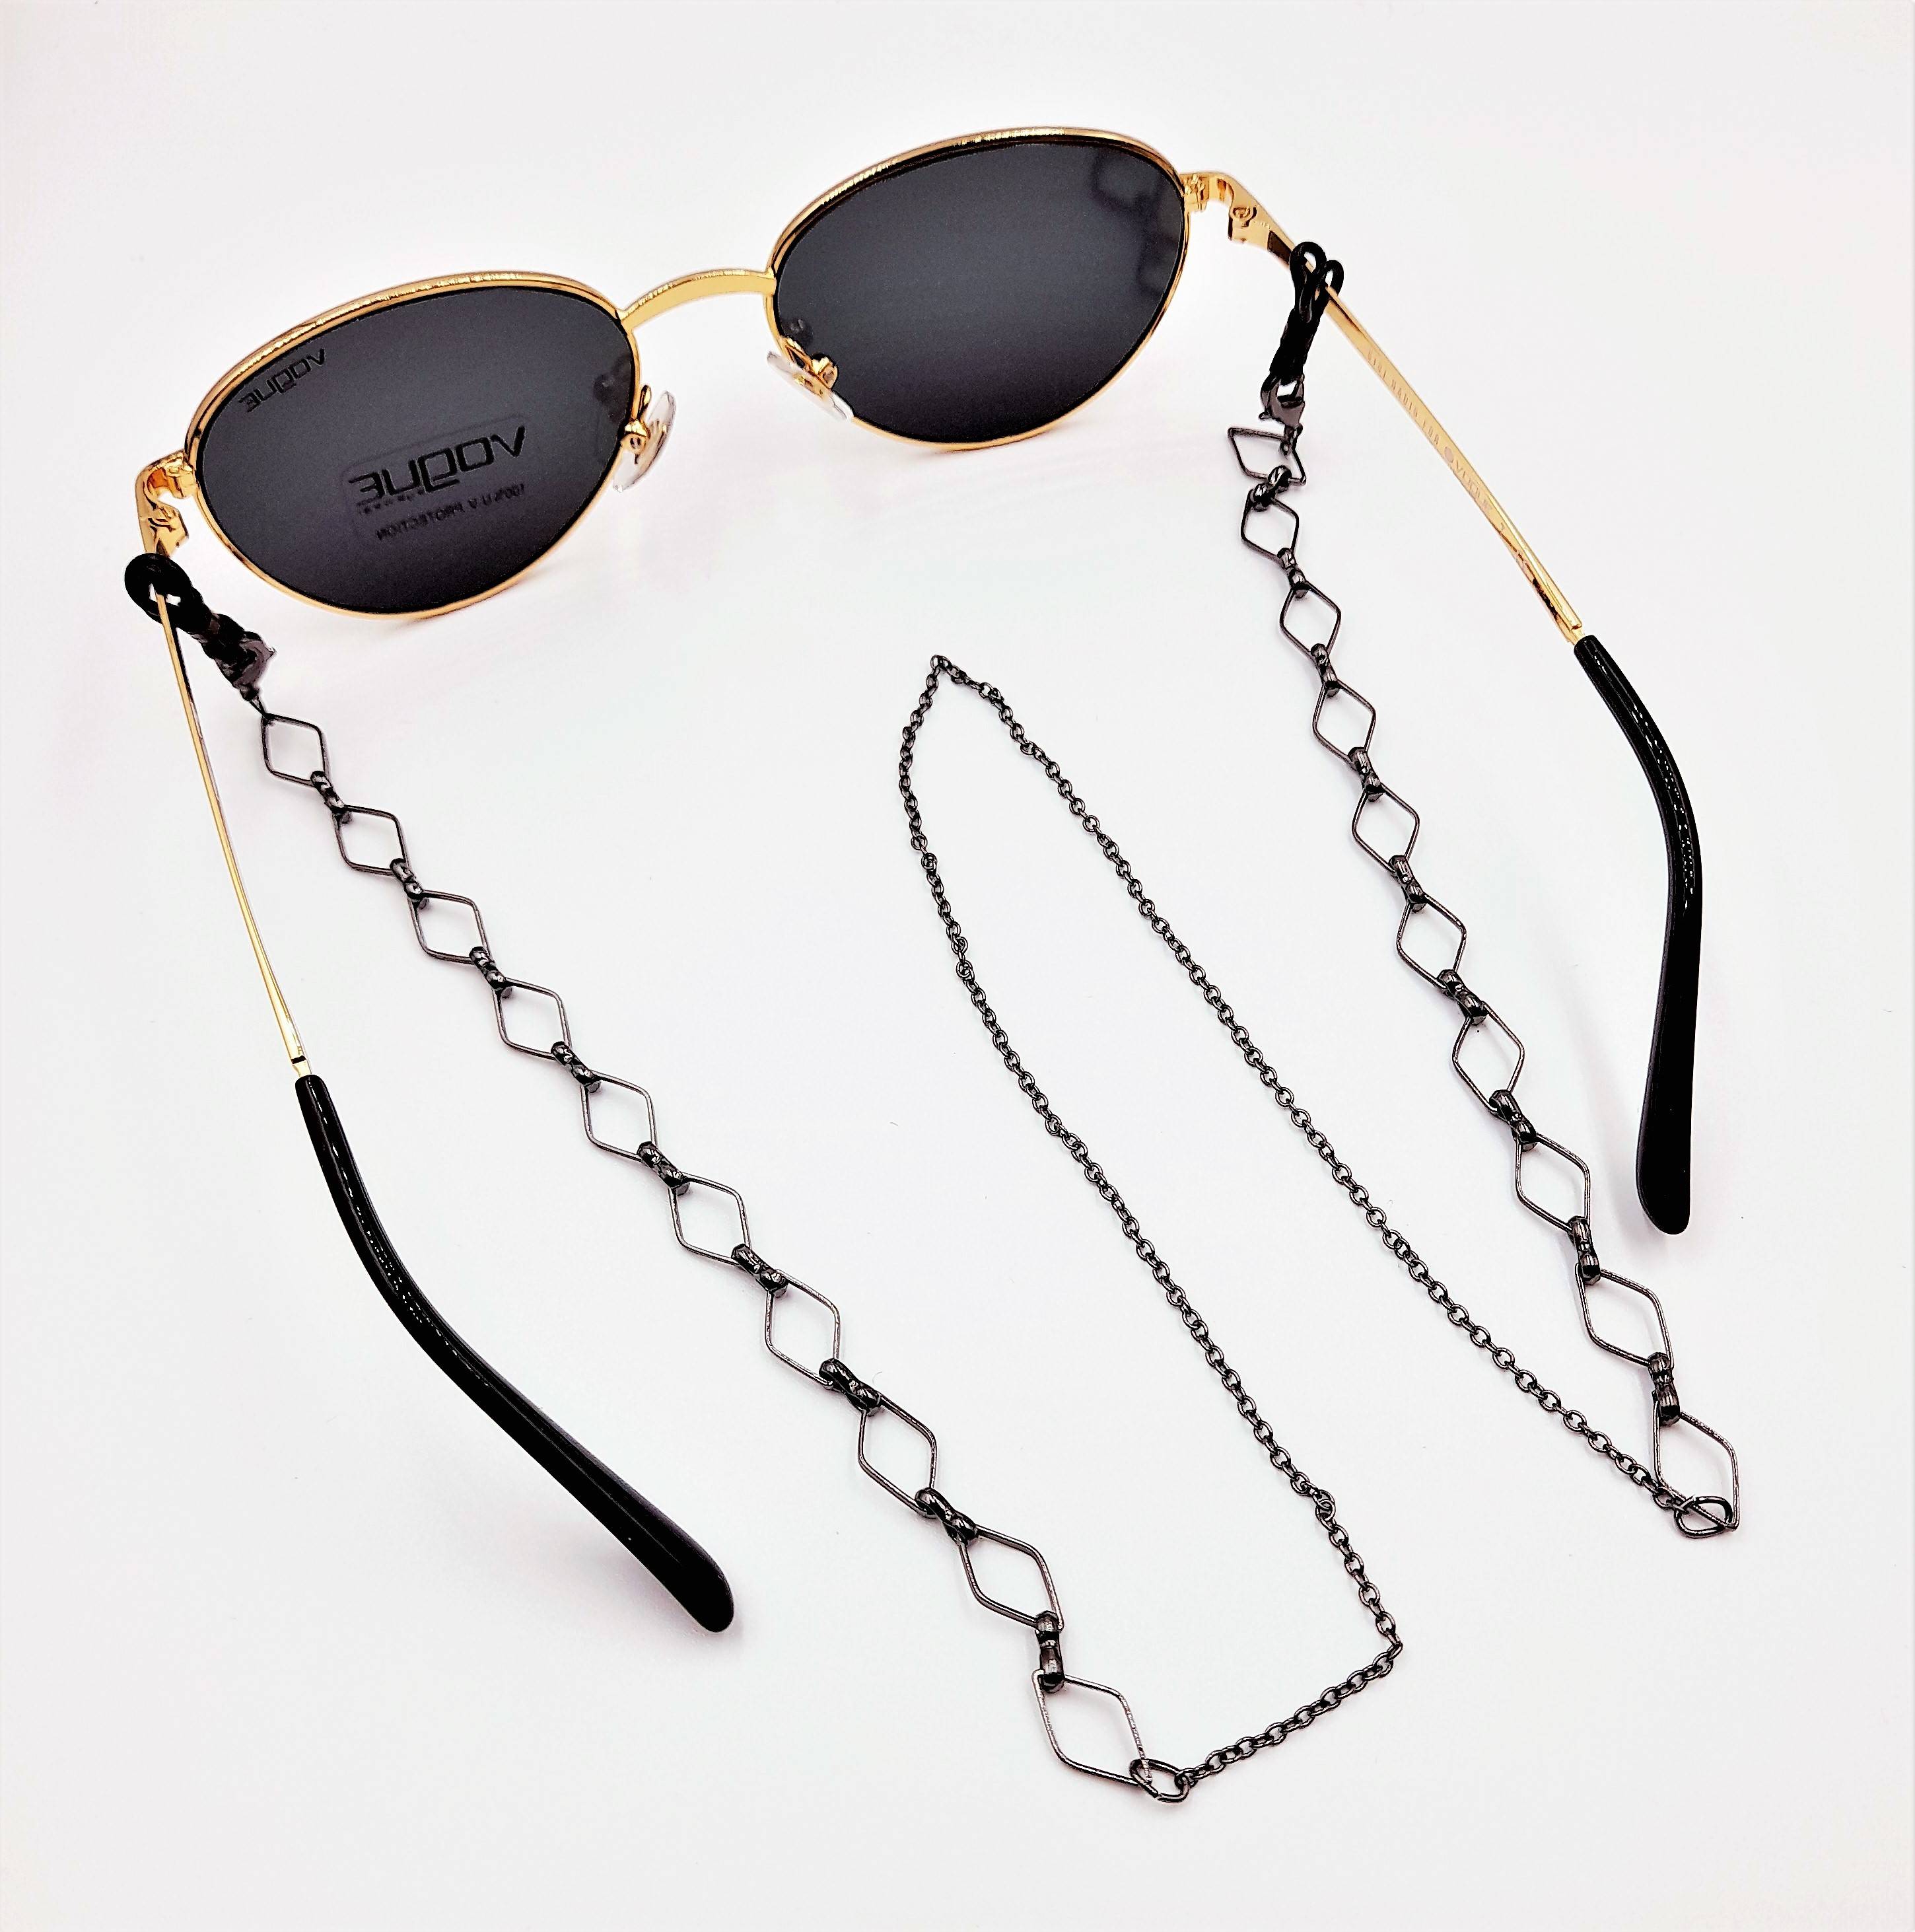 Chaine pour lunette - Fabrication Française - Métal noir - HENRI BEAUD - Atol